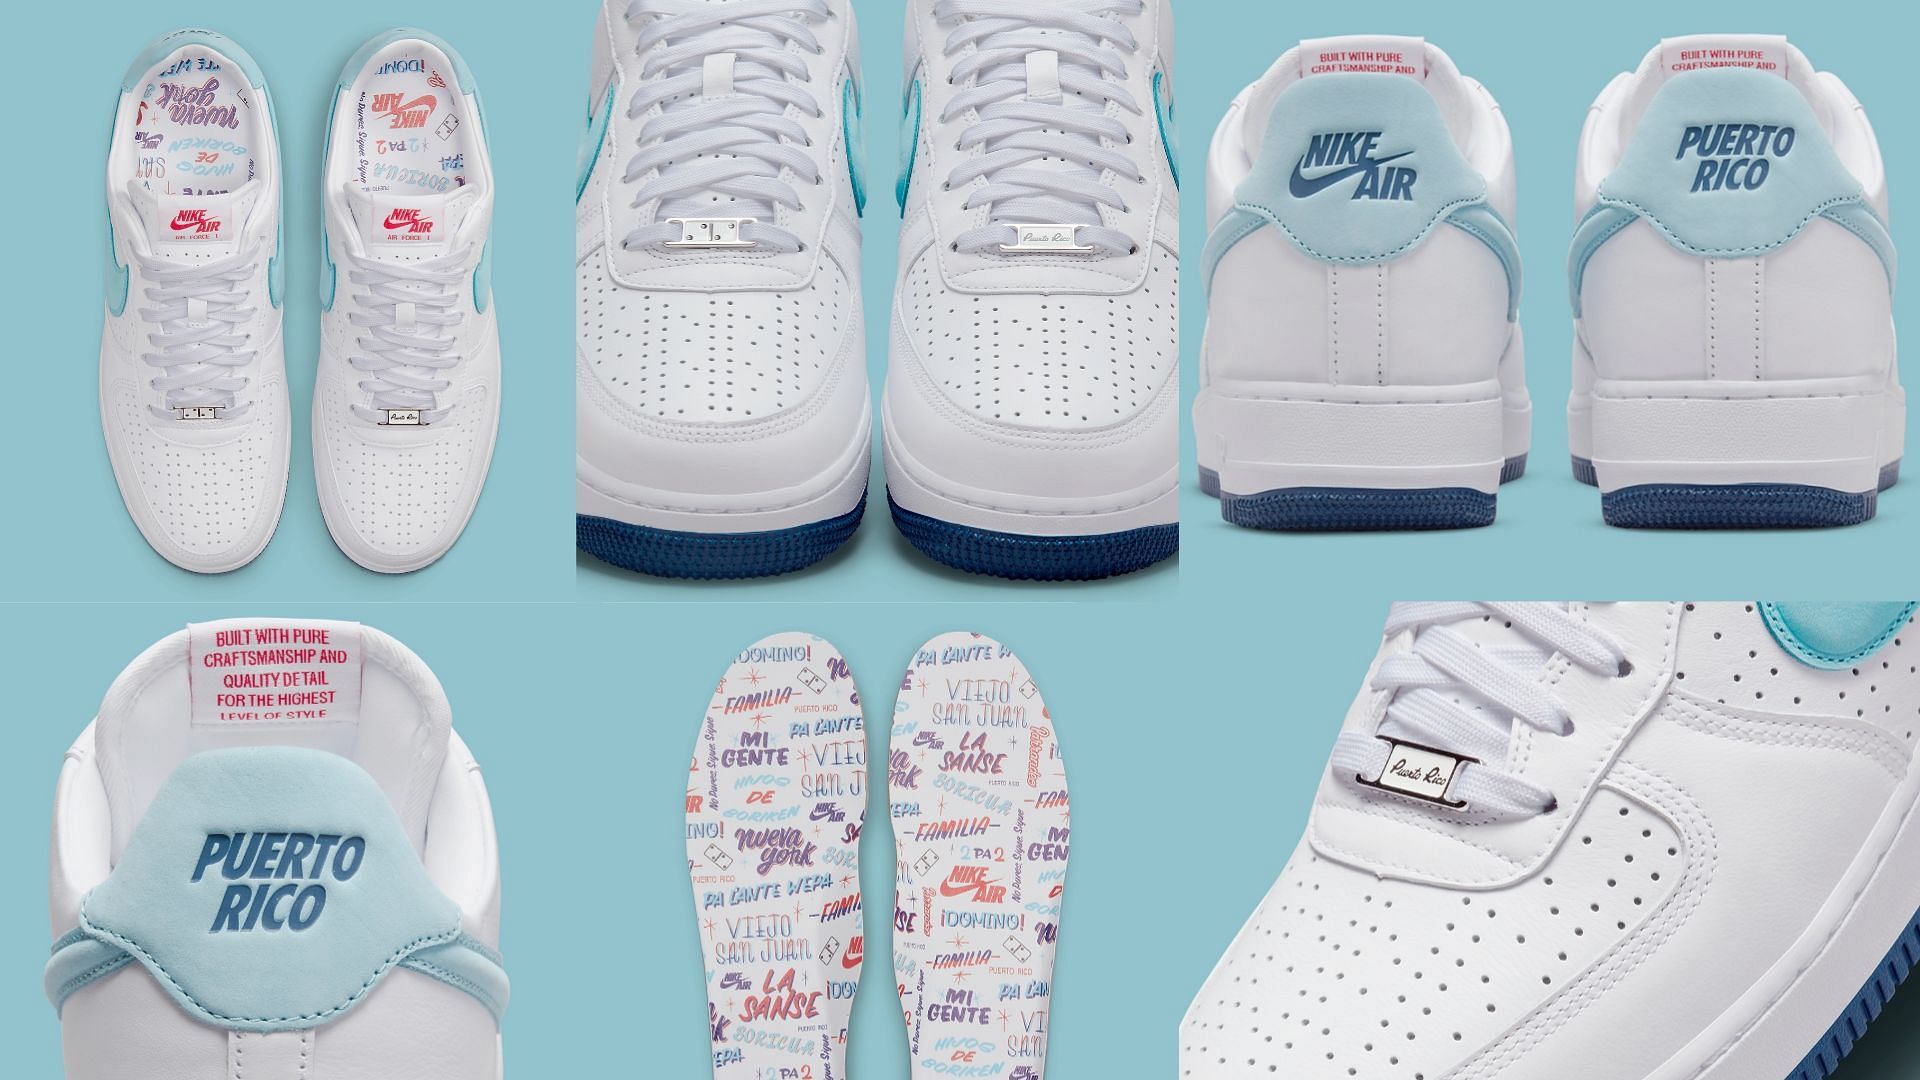 Upcoming Nike Air Force 1 Low Puerto Rico sneakers (Image via Sportskeeda)